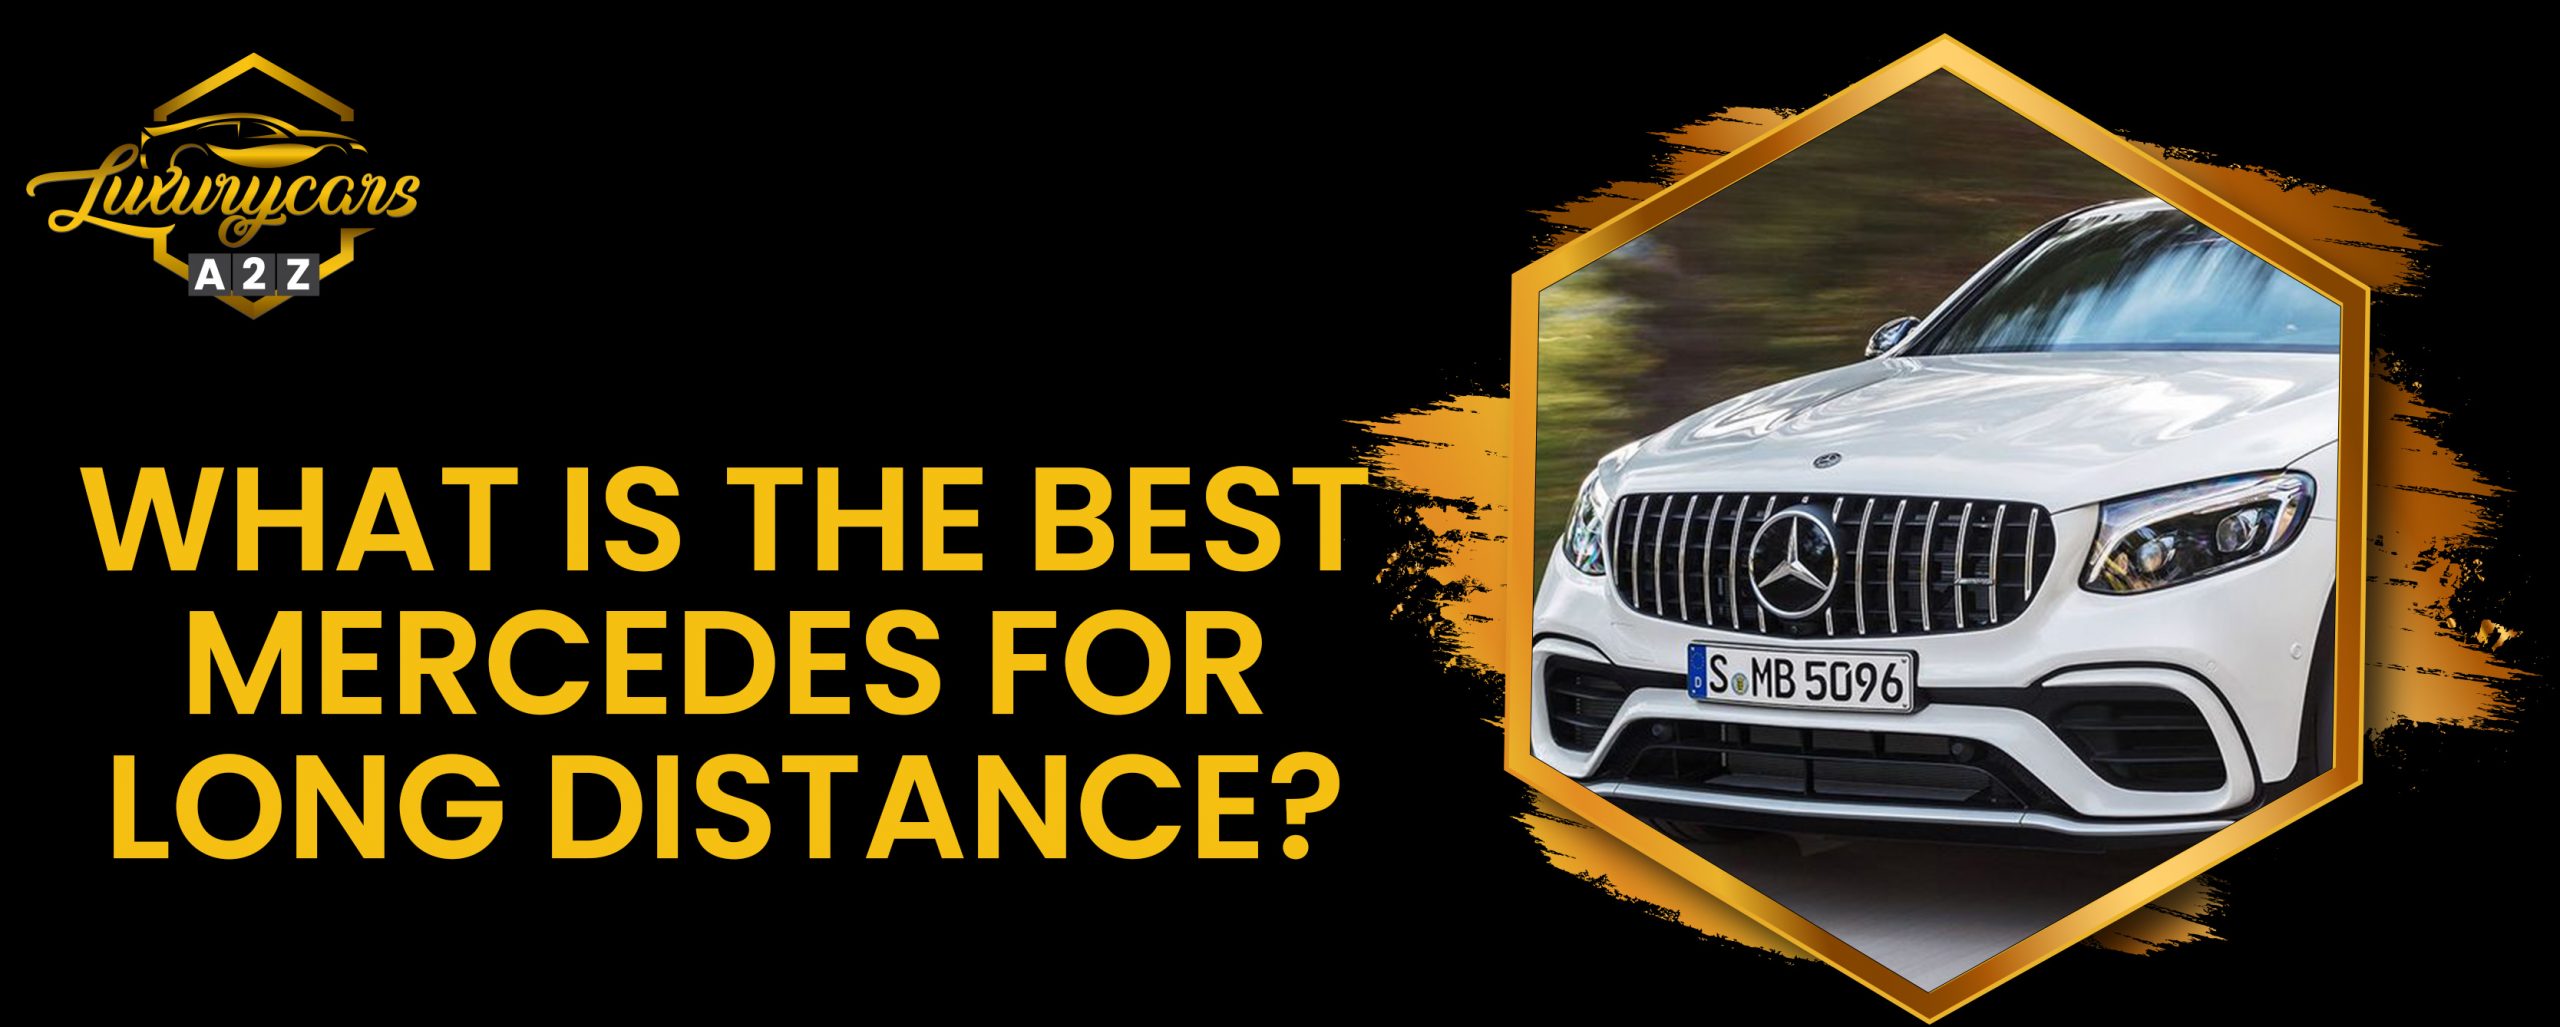 Quelle est la meilleure Mercedes pour les longs trajets ?